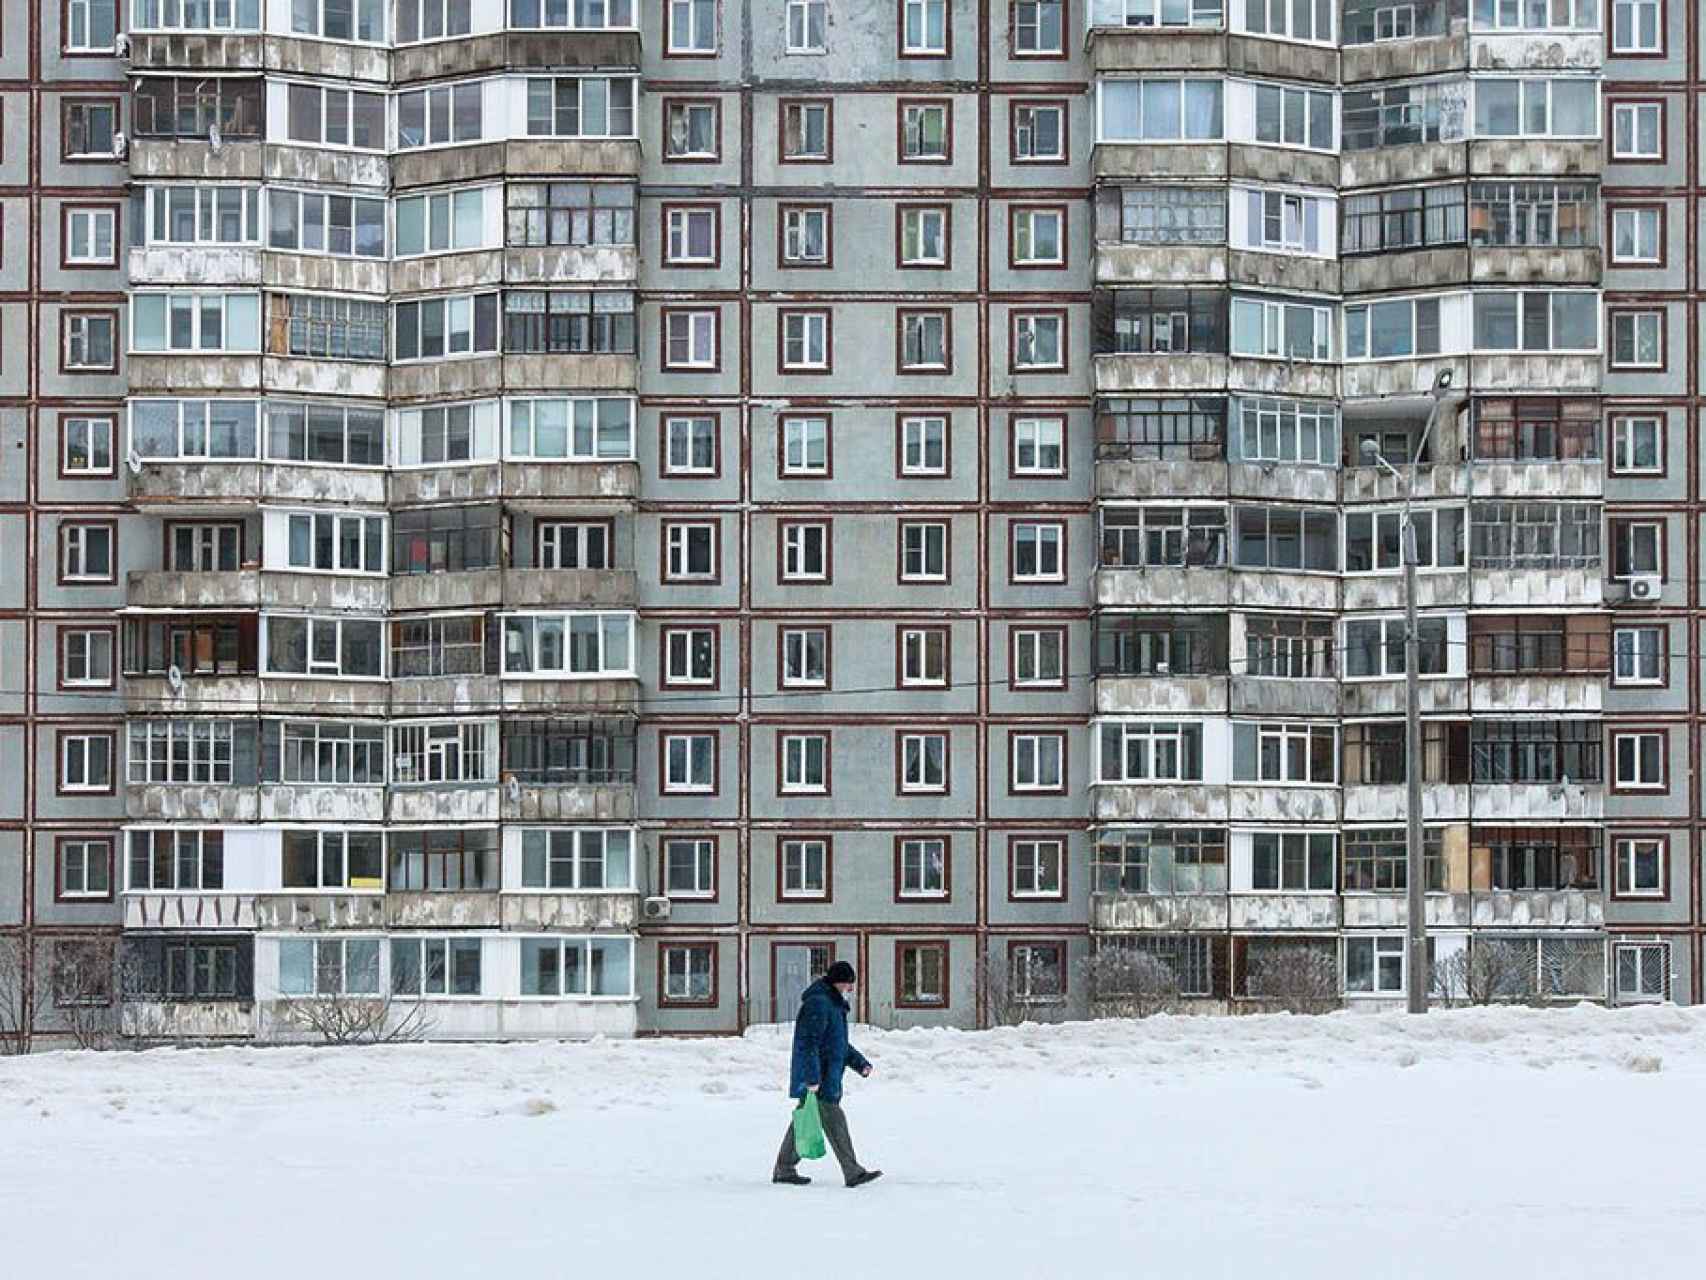 Bloques de viviendas soviéticas en serie